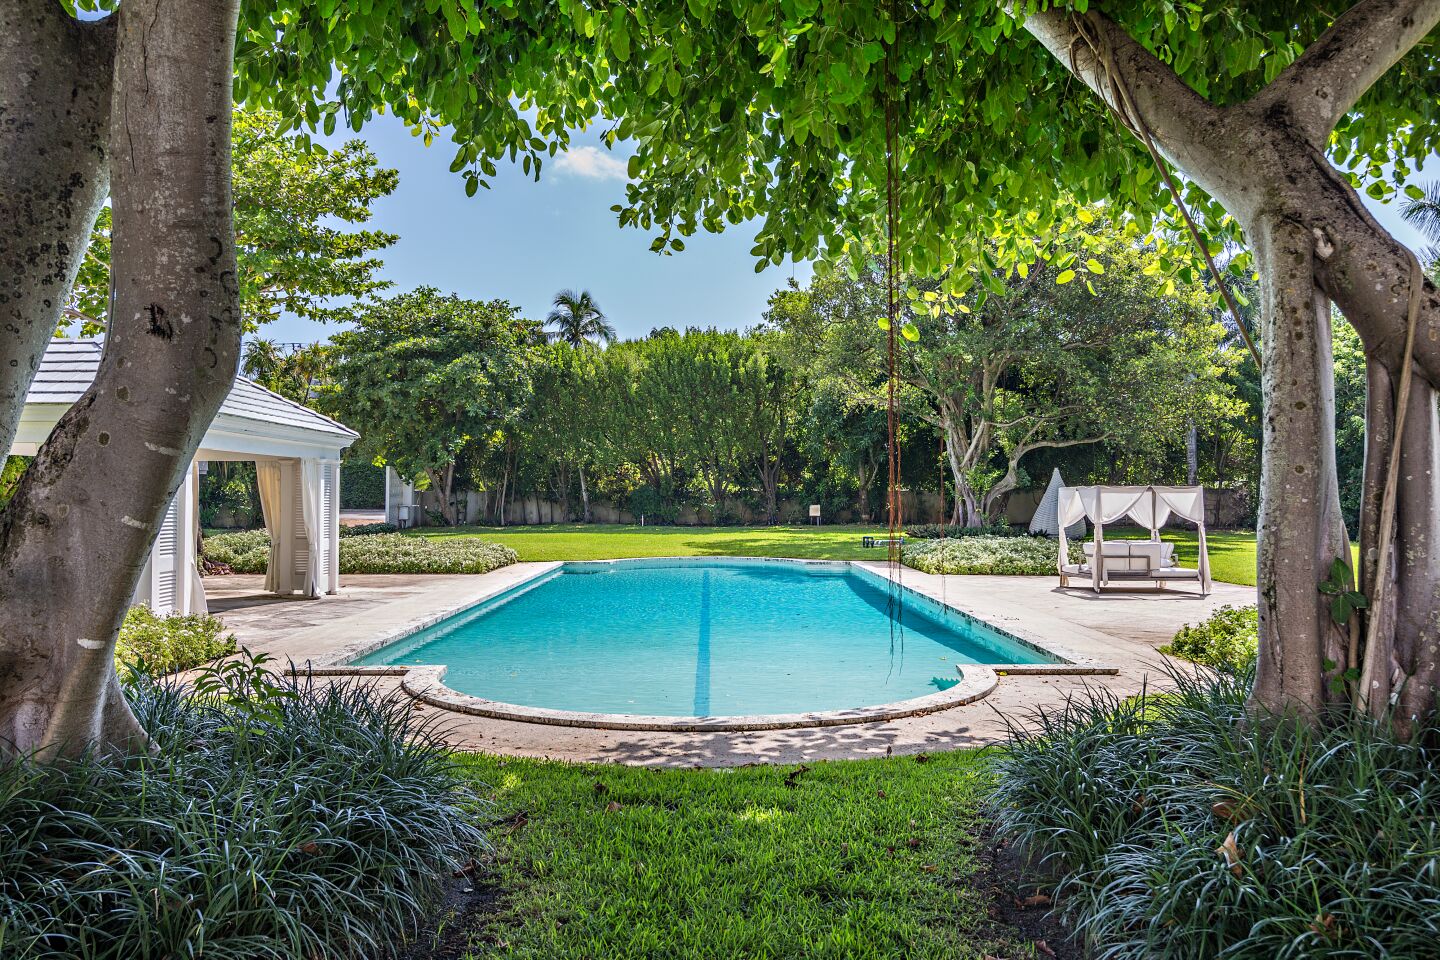 A leafy backyard with a big pool